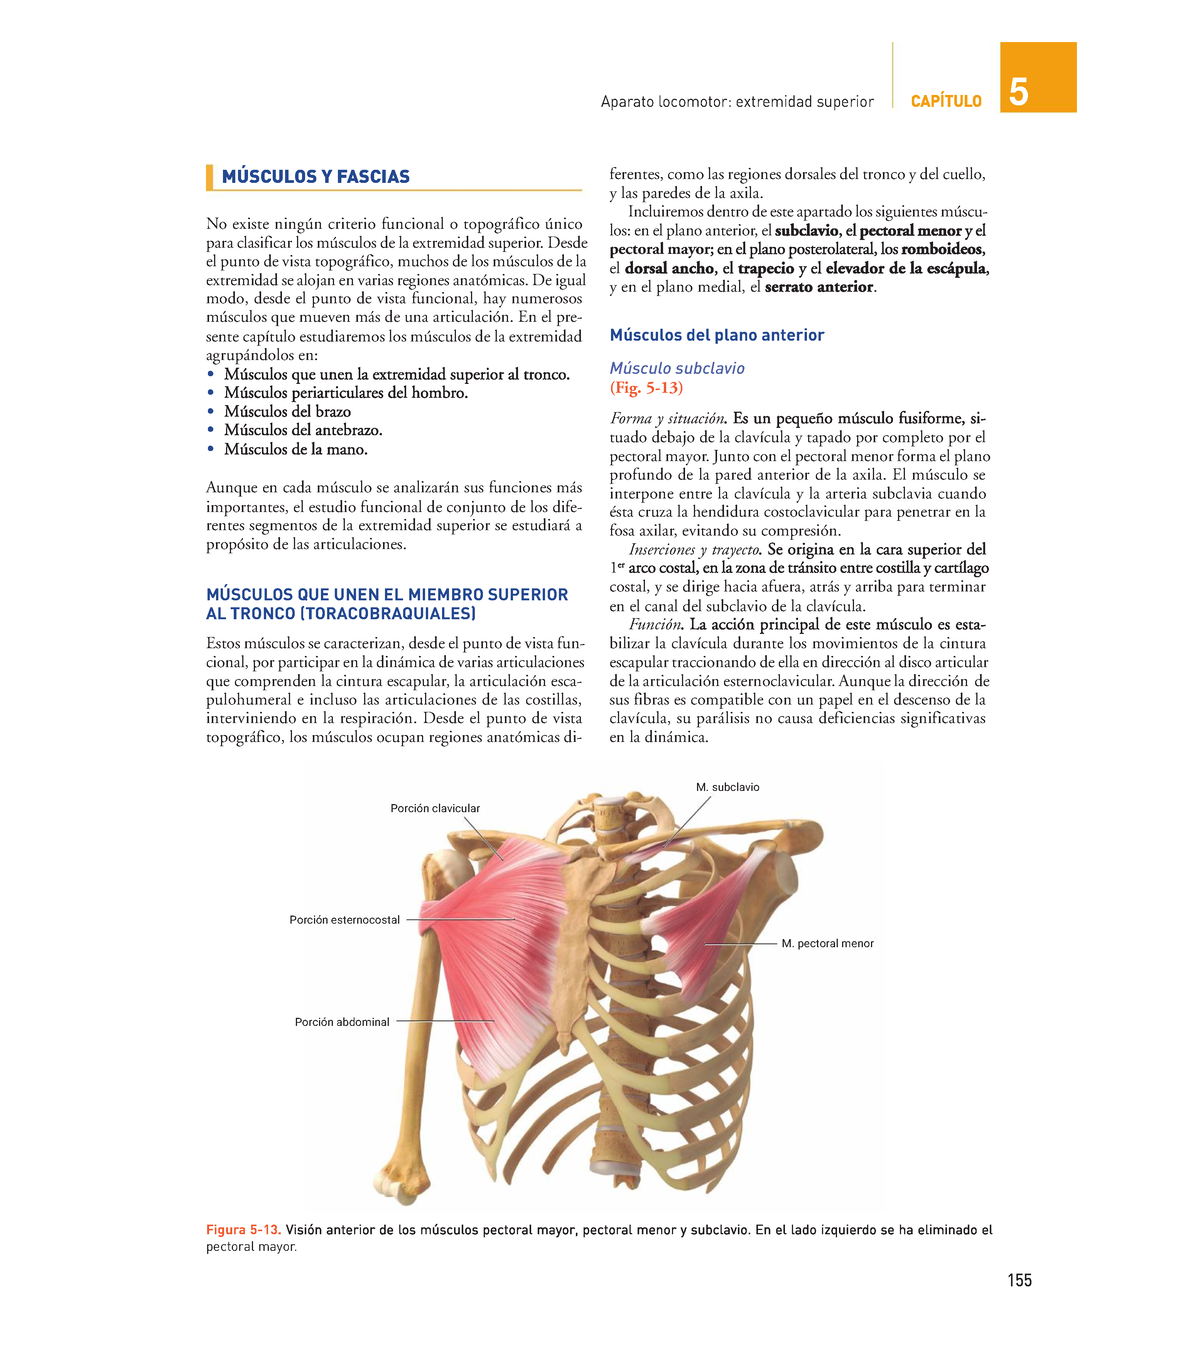 23-Músculos profundos de la columna vertebral. Visión lateral izquierda